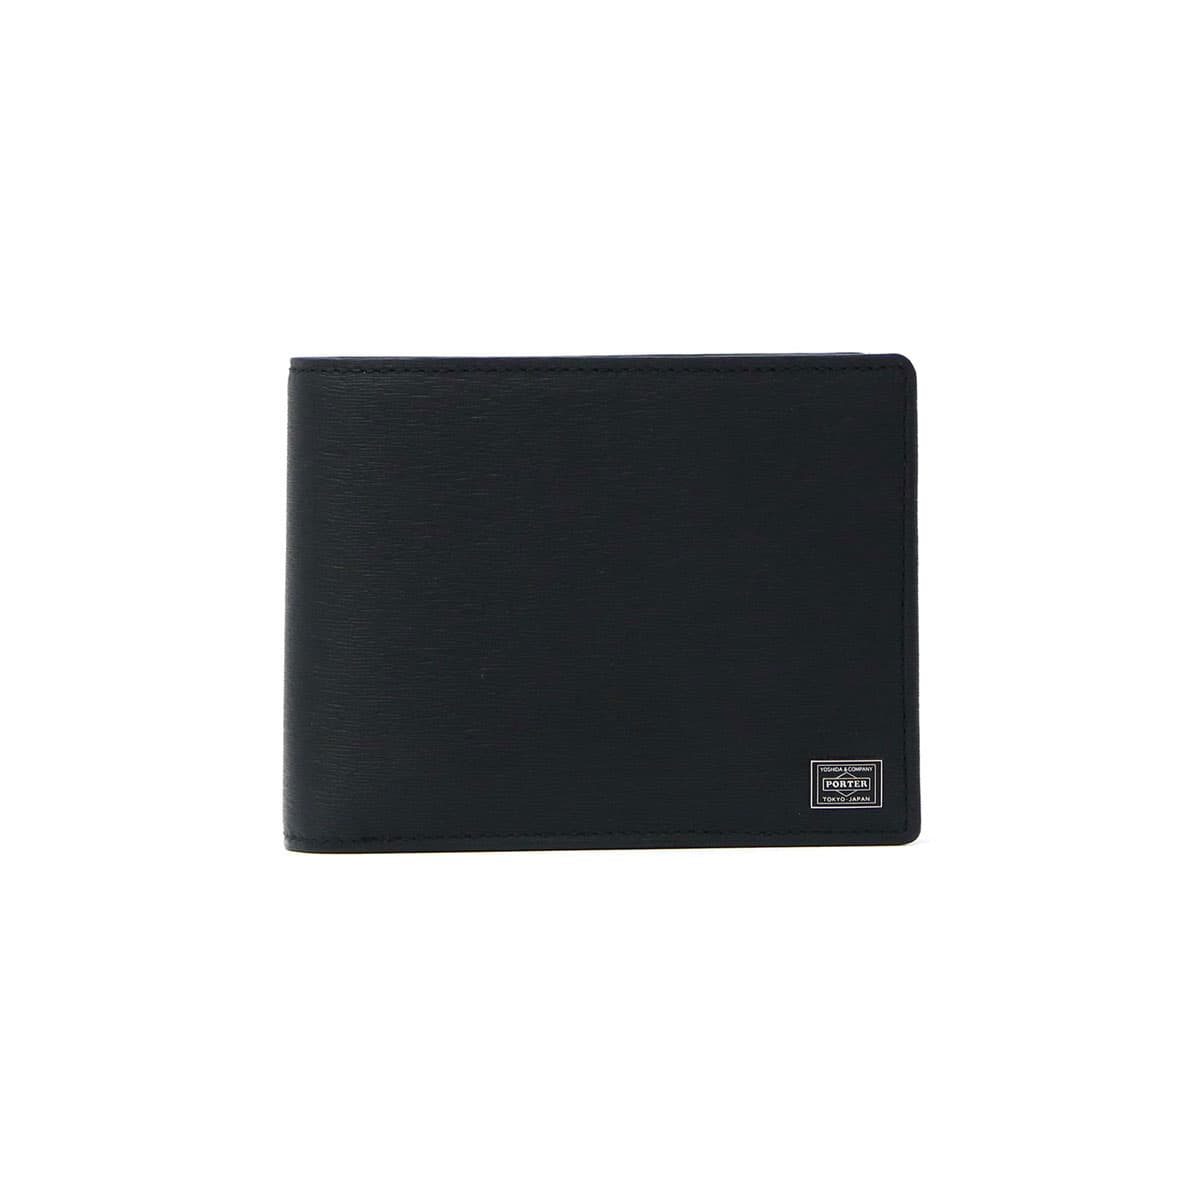 吉田カバン カレント 二つ折り財布 二層式 052-02203 ブラック